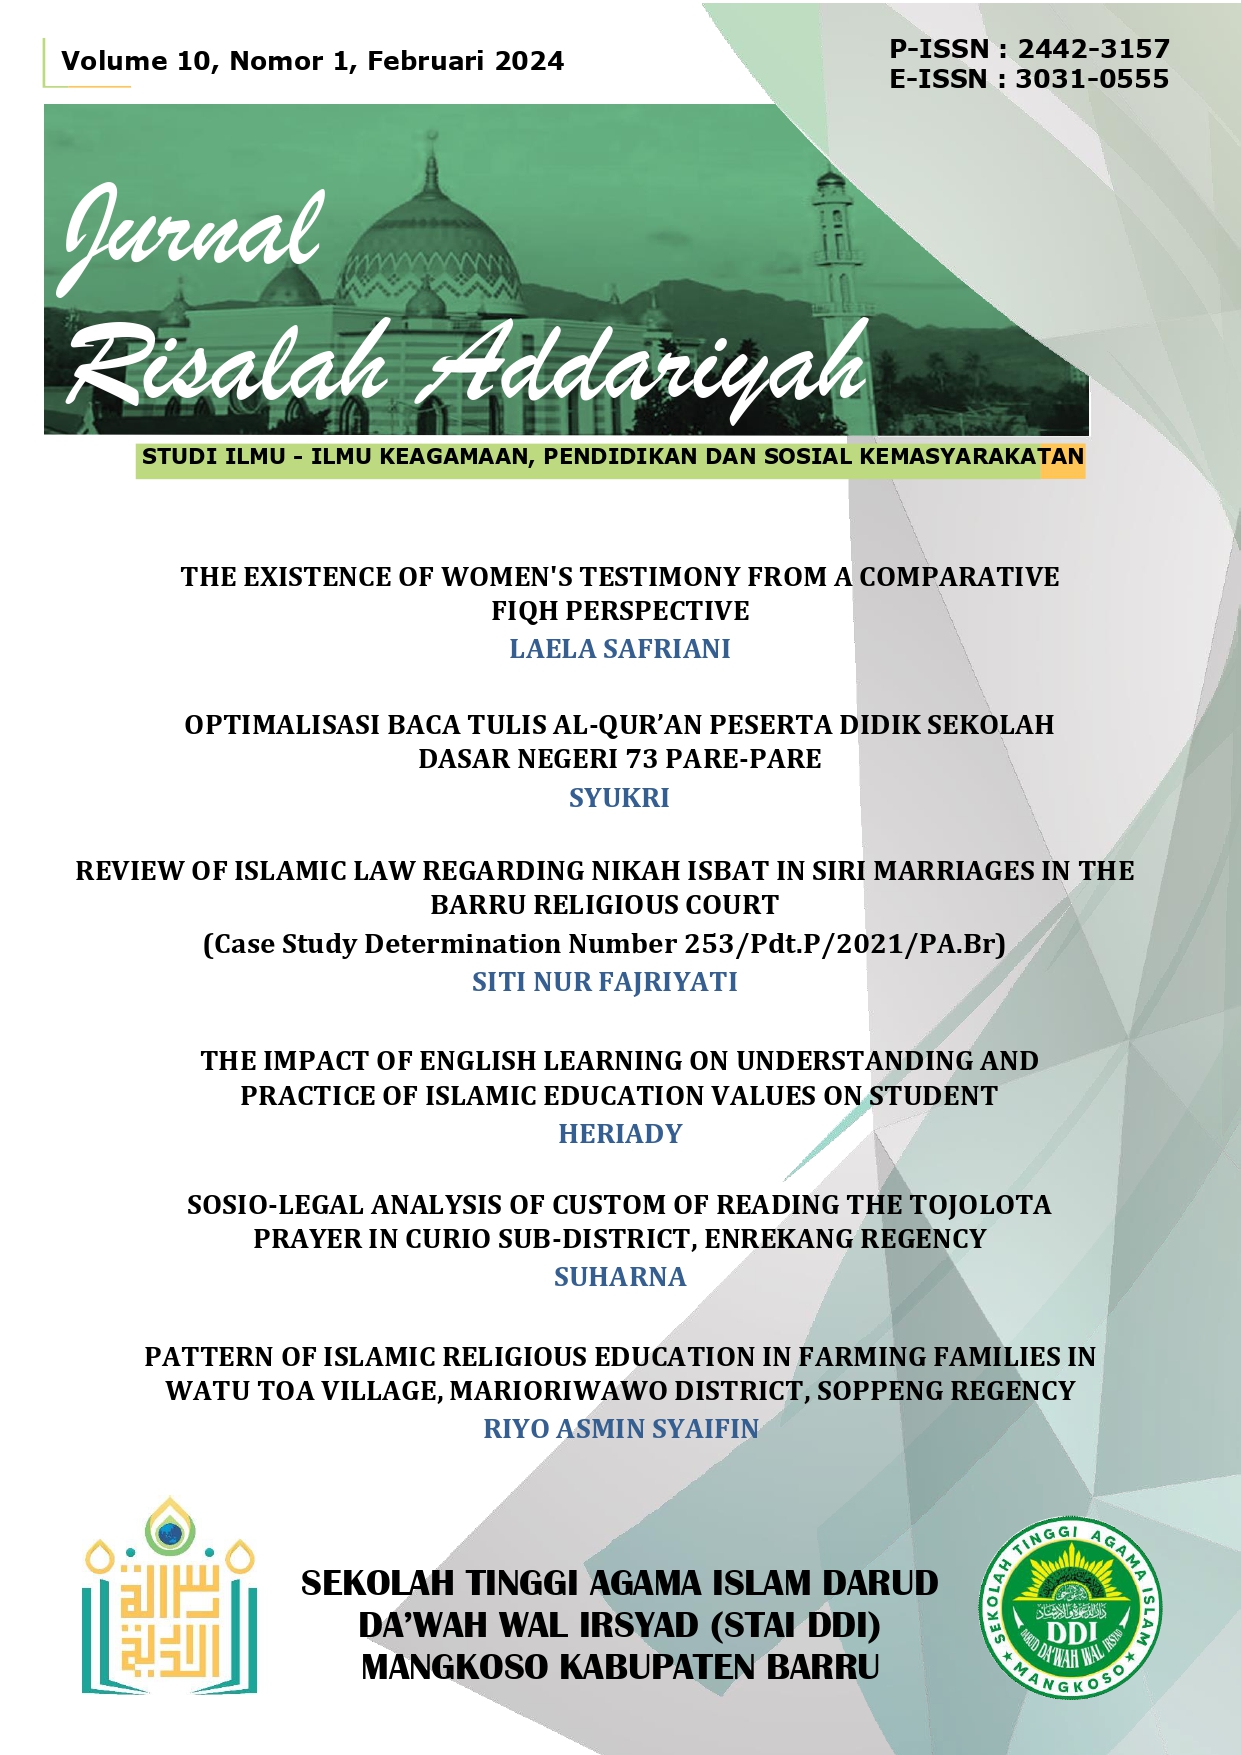 					View Vol. 10 No. 1 (2024): Jurnal Risalah Addariyah : Studi Ilmu-Ilmu Keagamaan, Pendidikan dan Sosial Kemasyarakatan
				